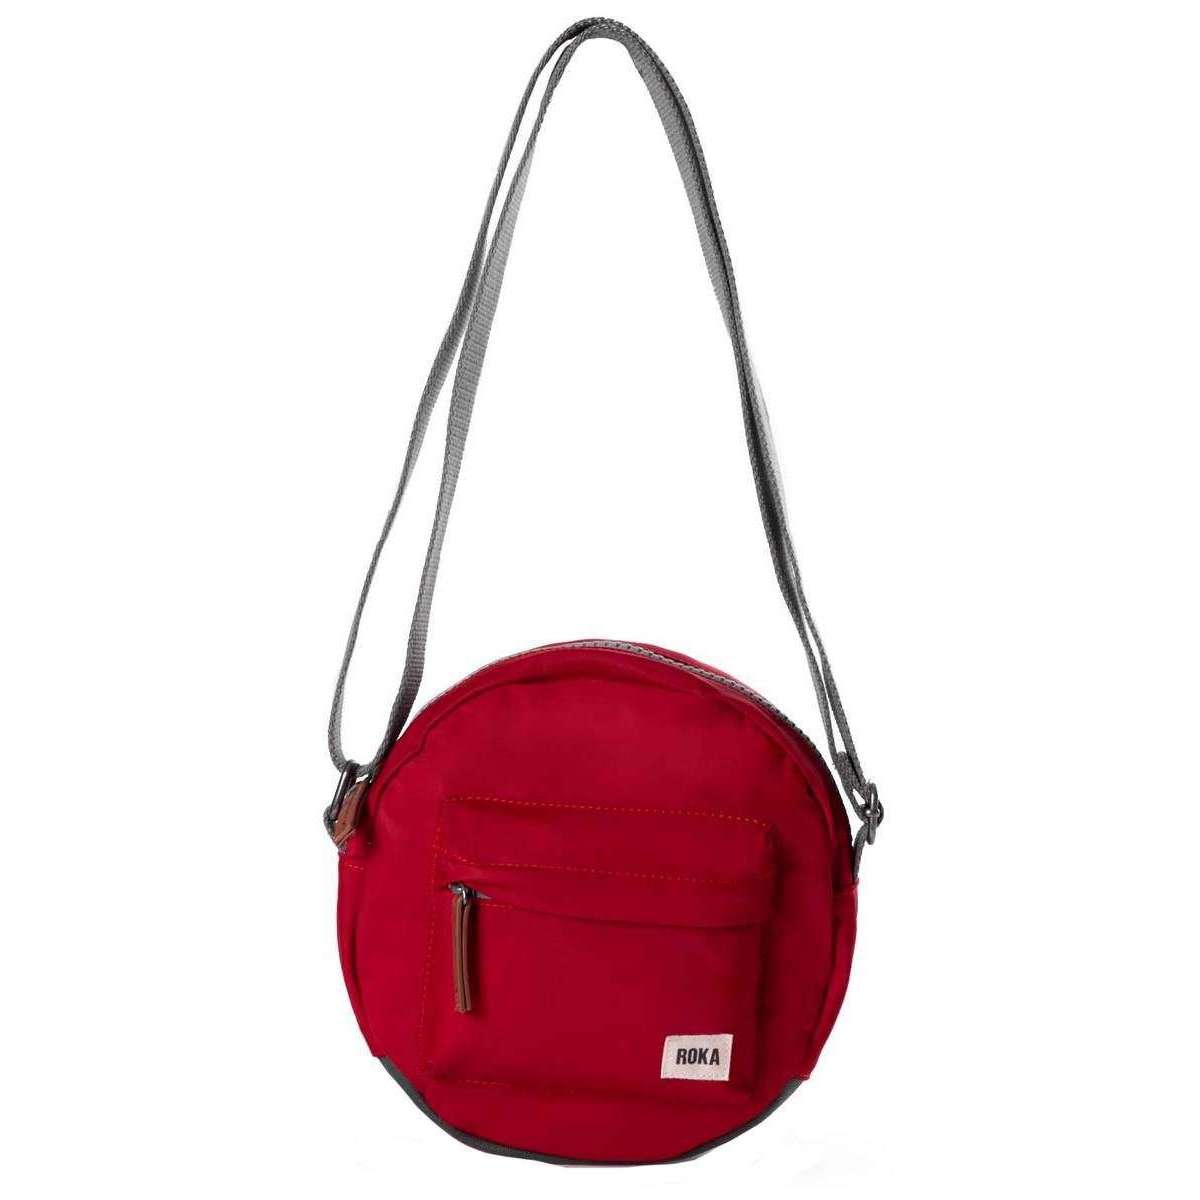 Roka Paddington B Small Sustainable Nylon Crossbody Bag - Cranberry Red